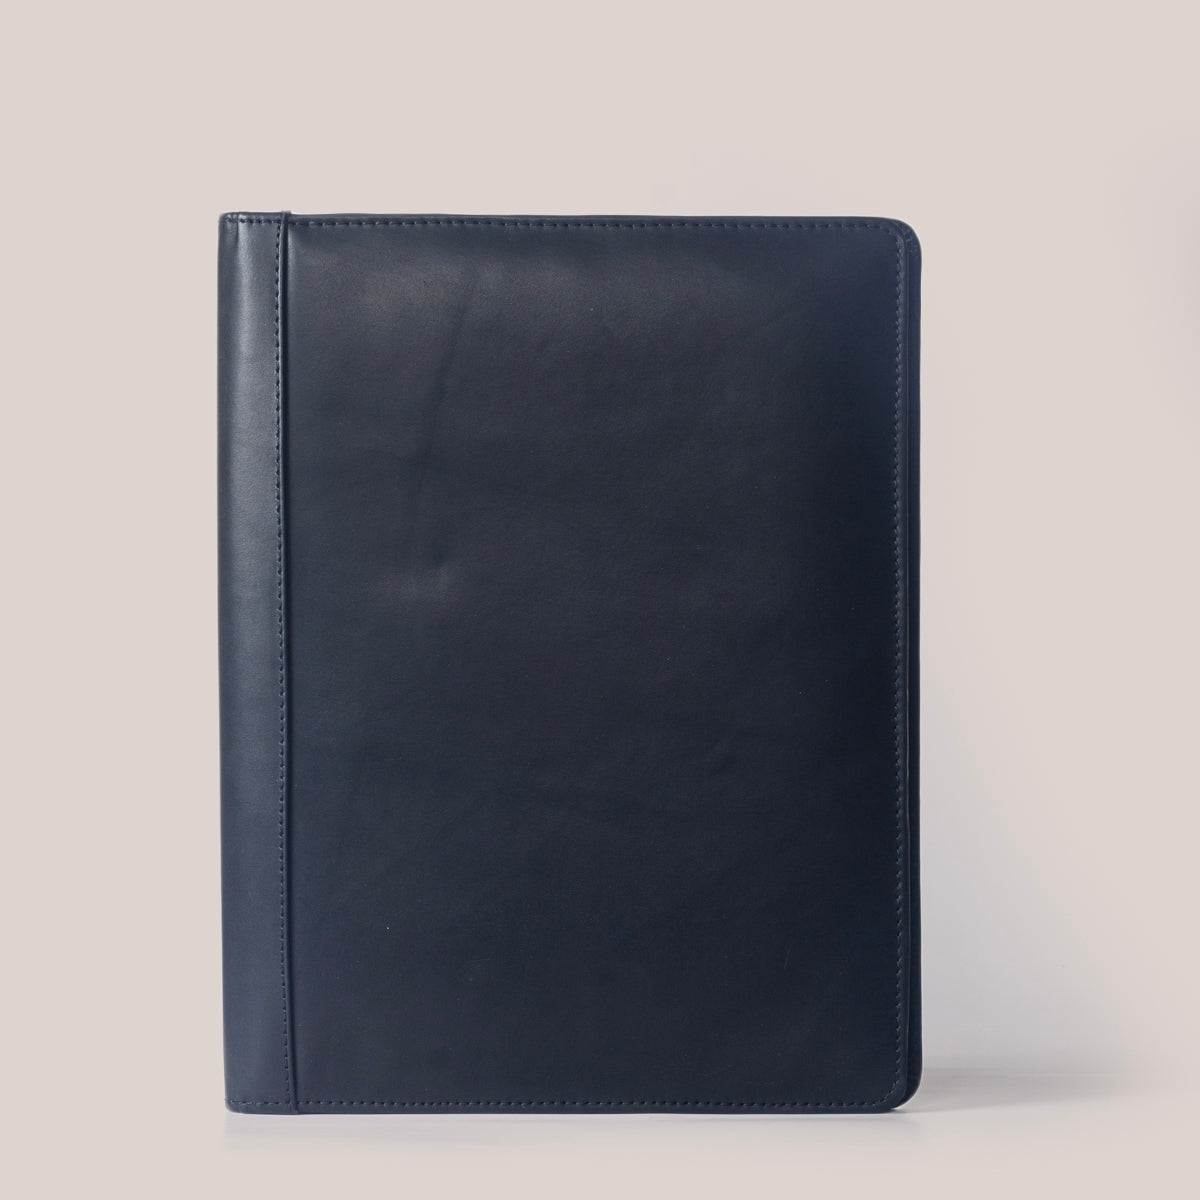 Aldona A4 Leather Padfolio Folder